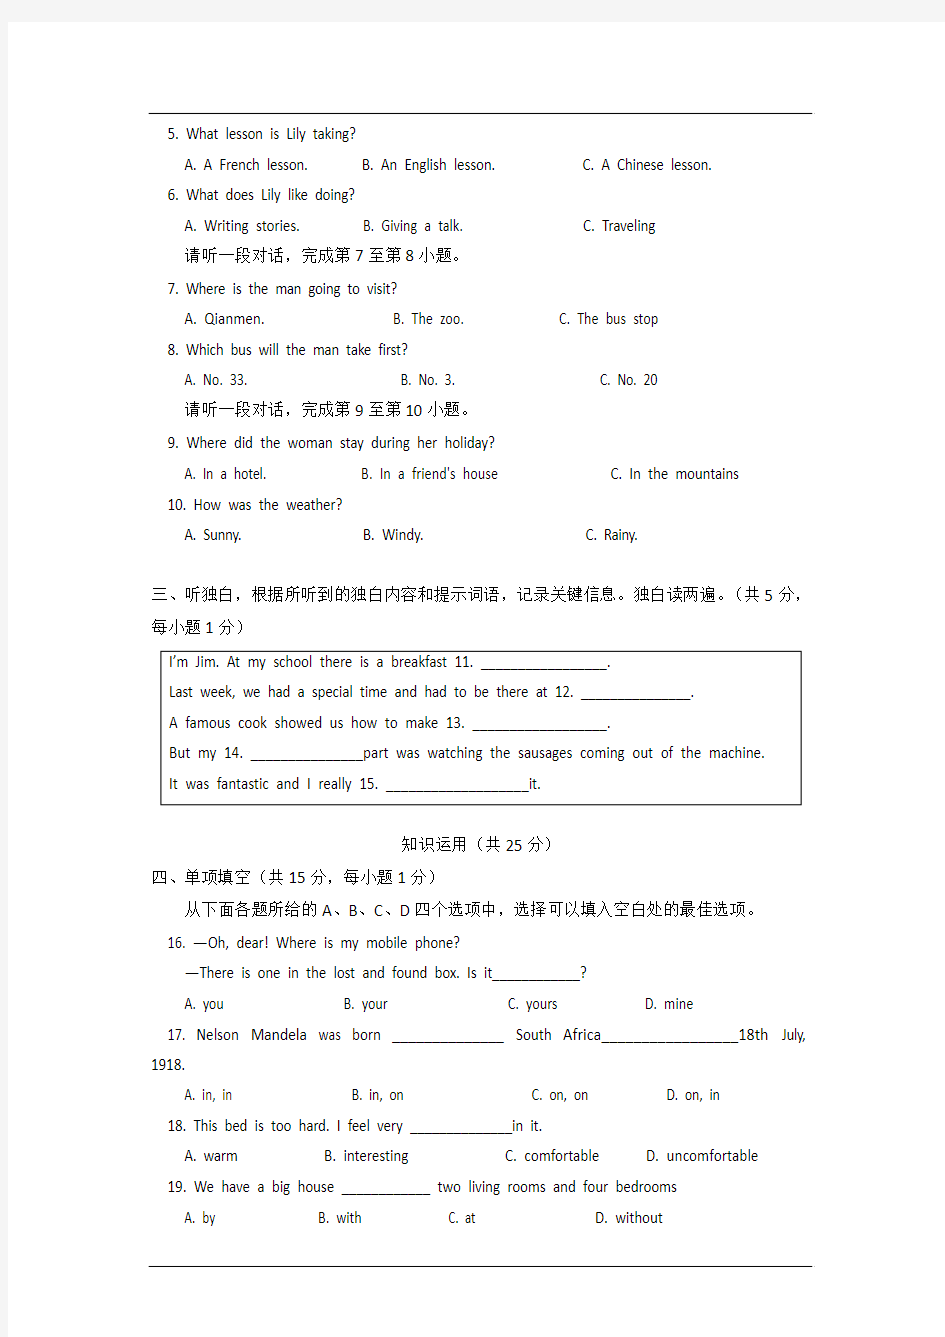 北京市西城区(北区)2013年期末考试英语试卷及答案